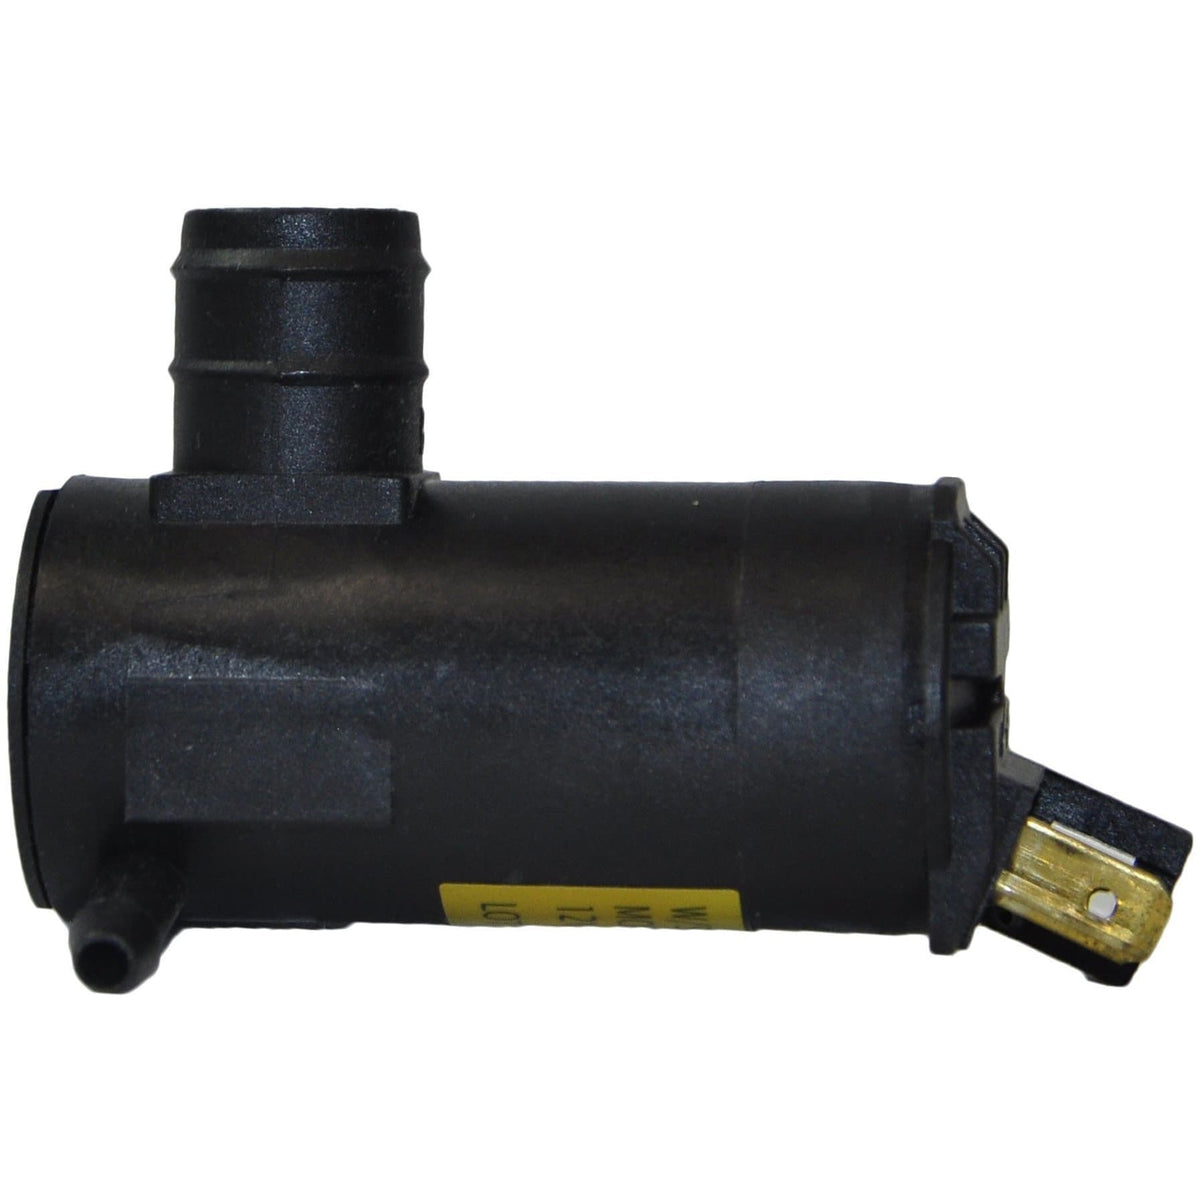 400888 - 12V Pump for Washer Bottle - AutoTex